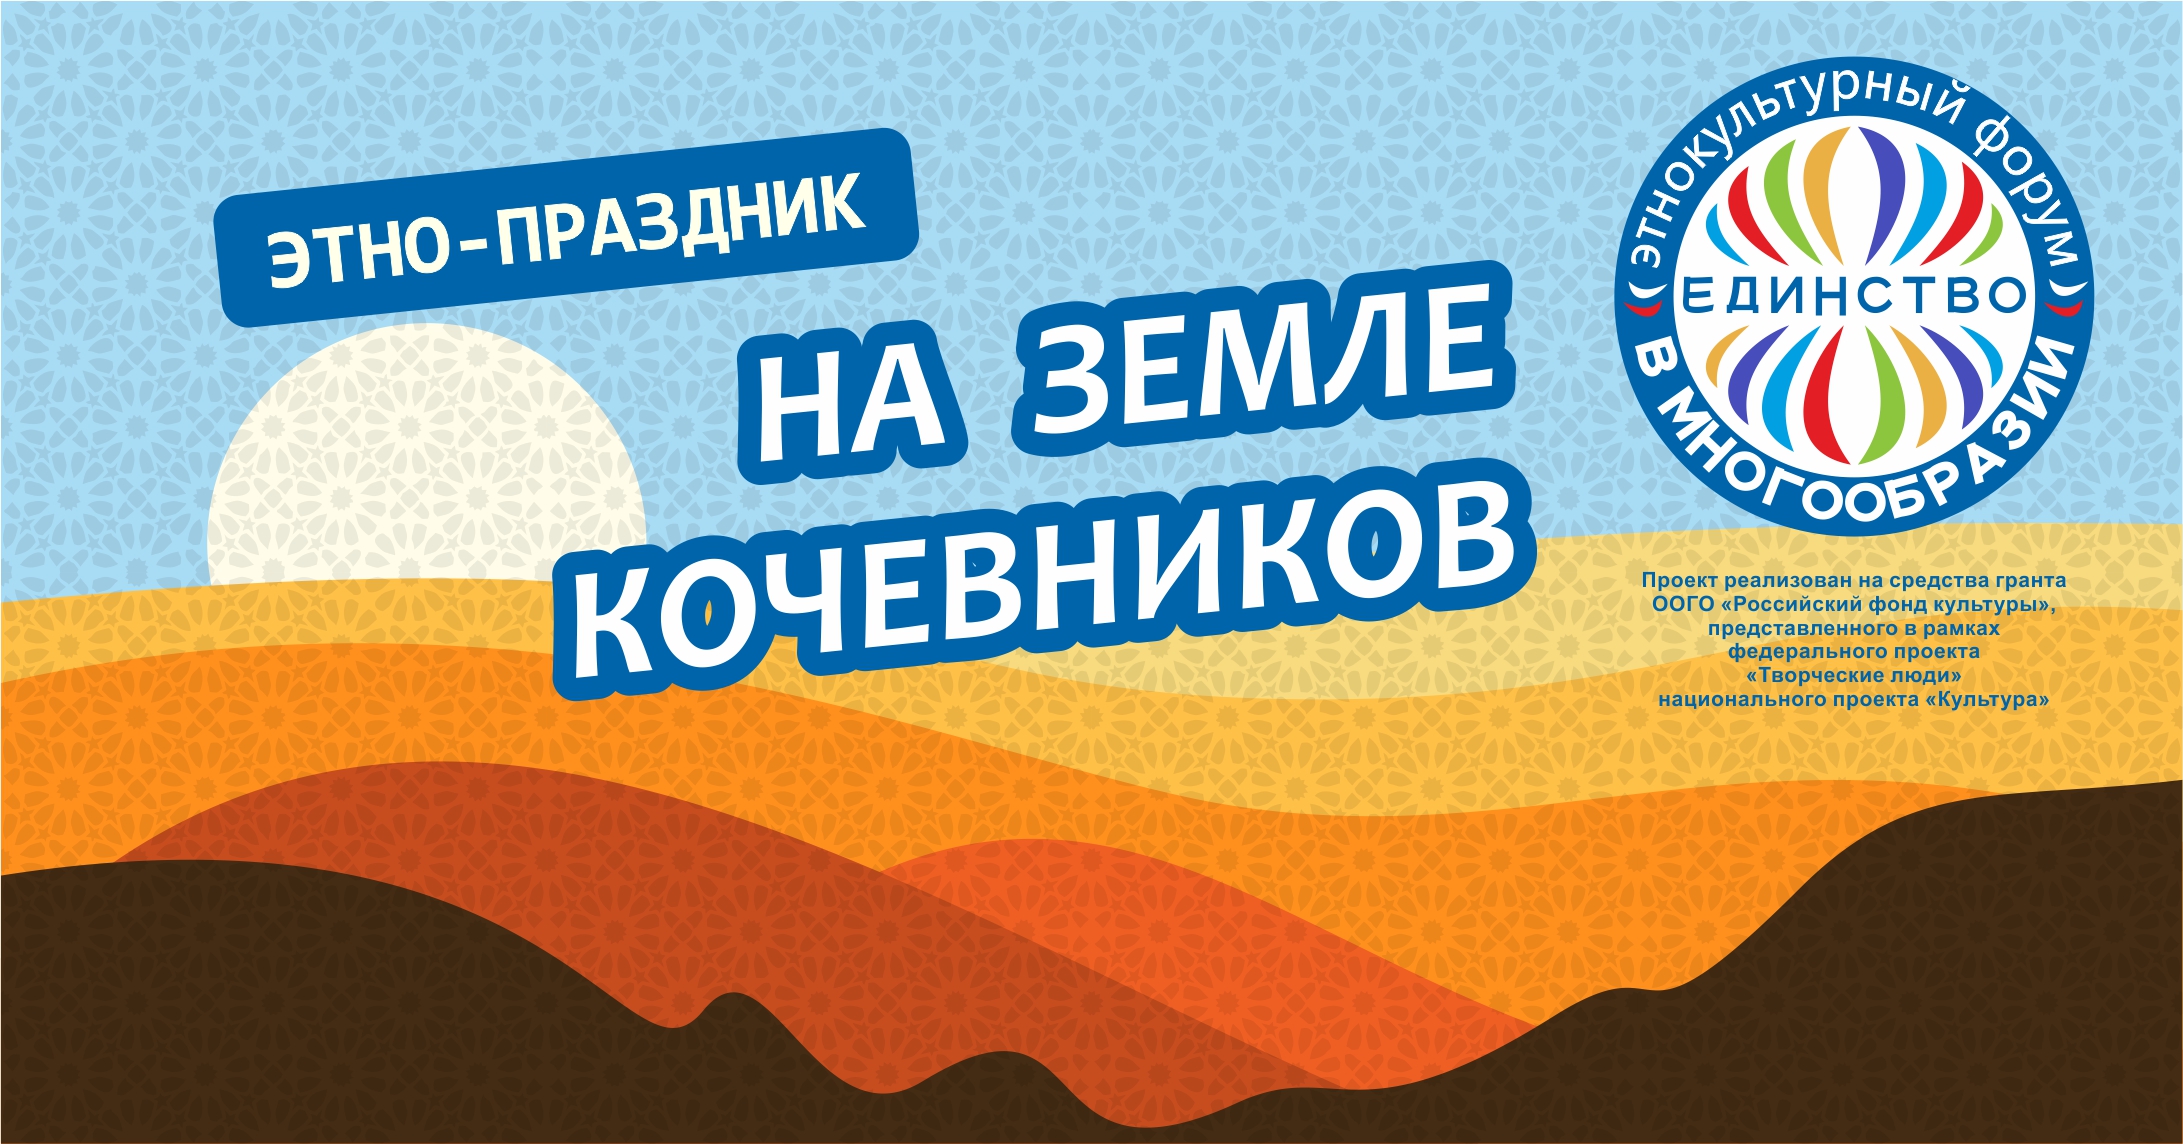 Этно-праздник «На земле кочевников» вошел в число победителей национальной премии «События России» 2020